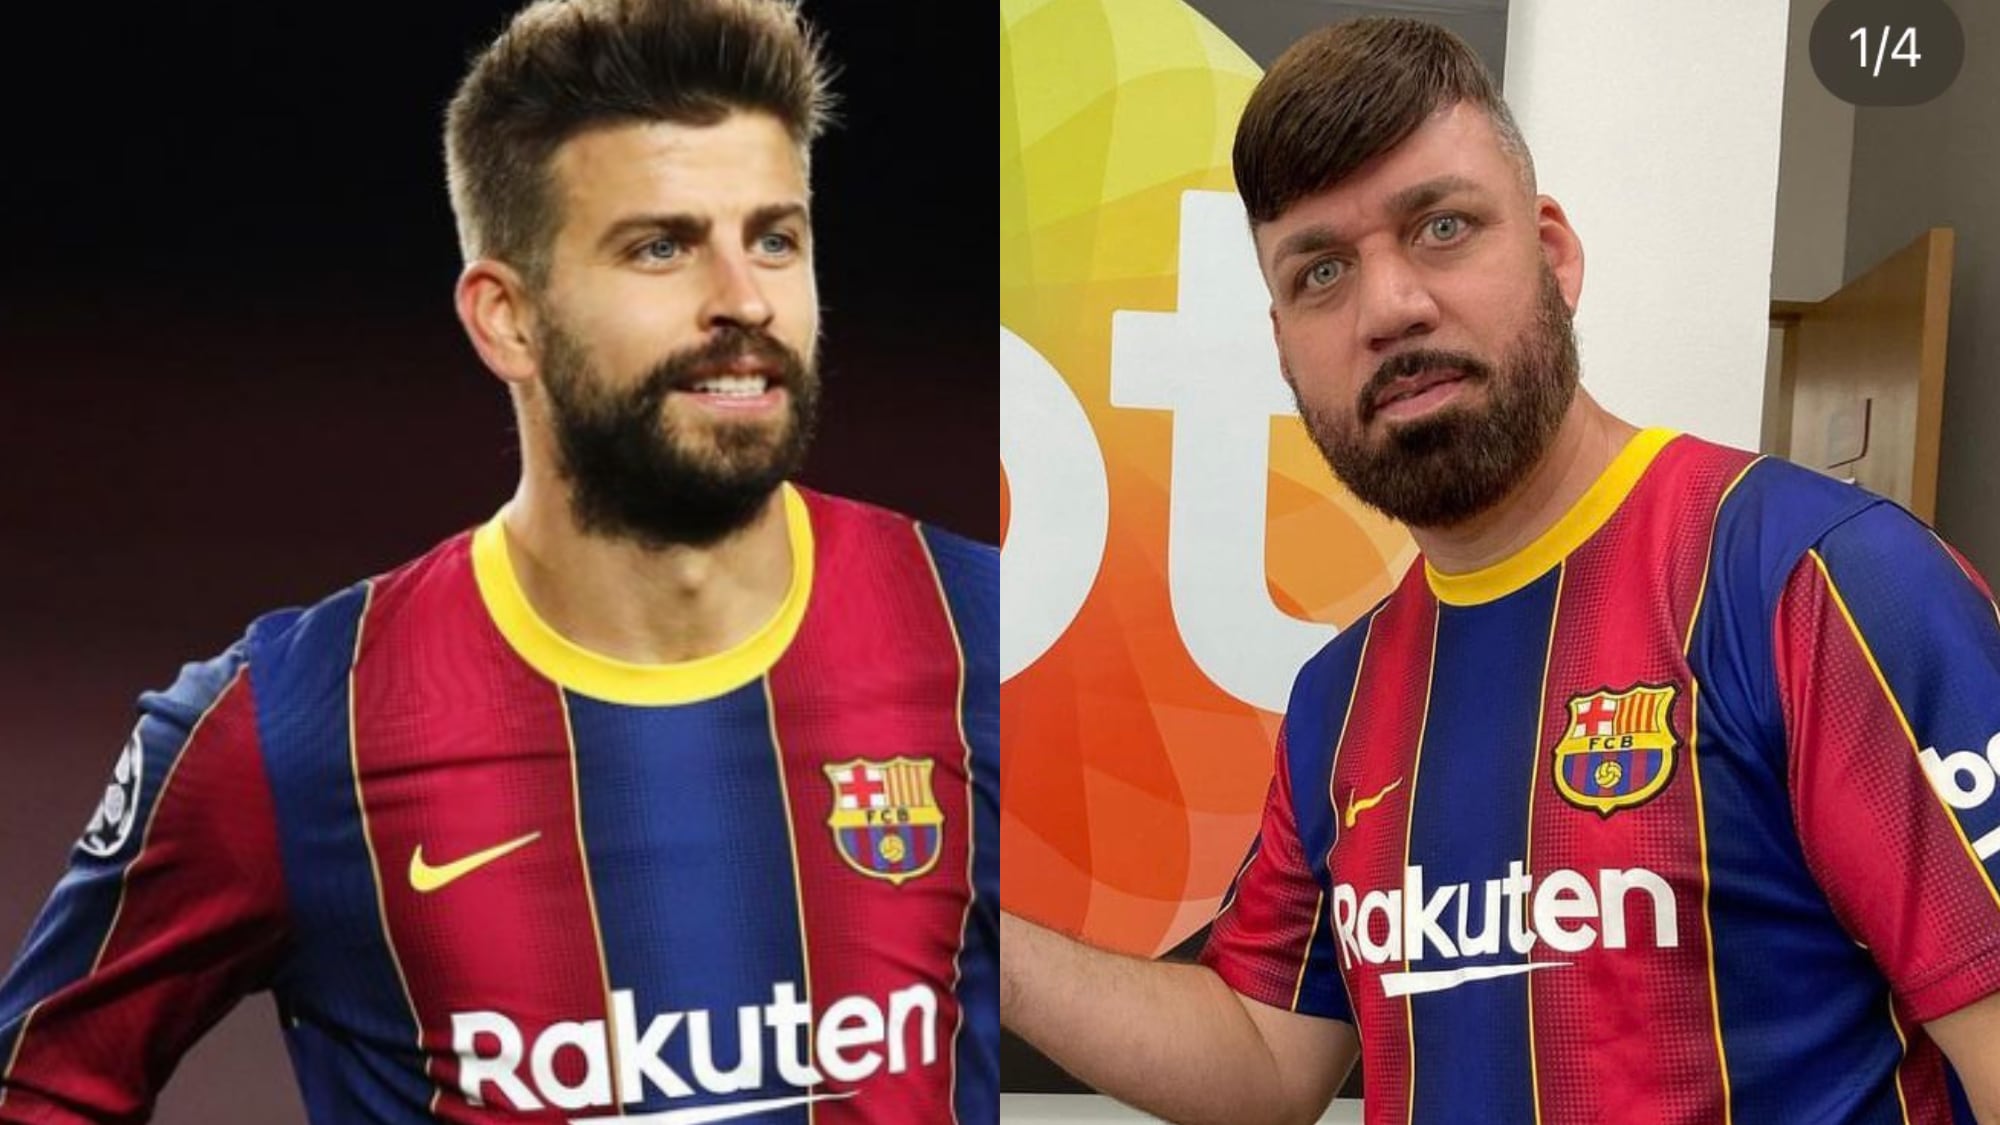 "Sósia" do Piqué viraliza pela falta de semelhança com o ex-jogador do Barcelona
Fotos: @3gerardpique | @sosiadopique